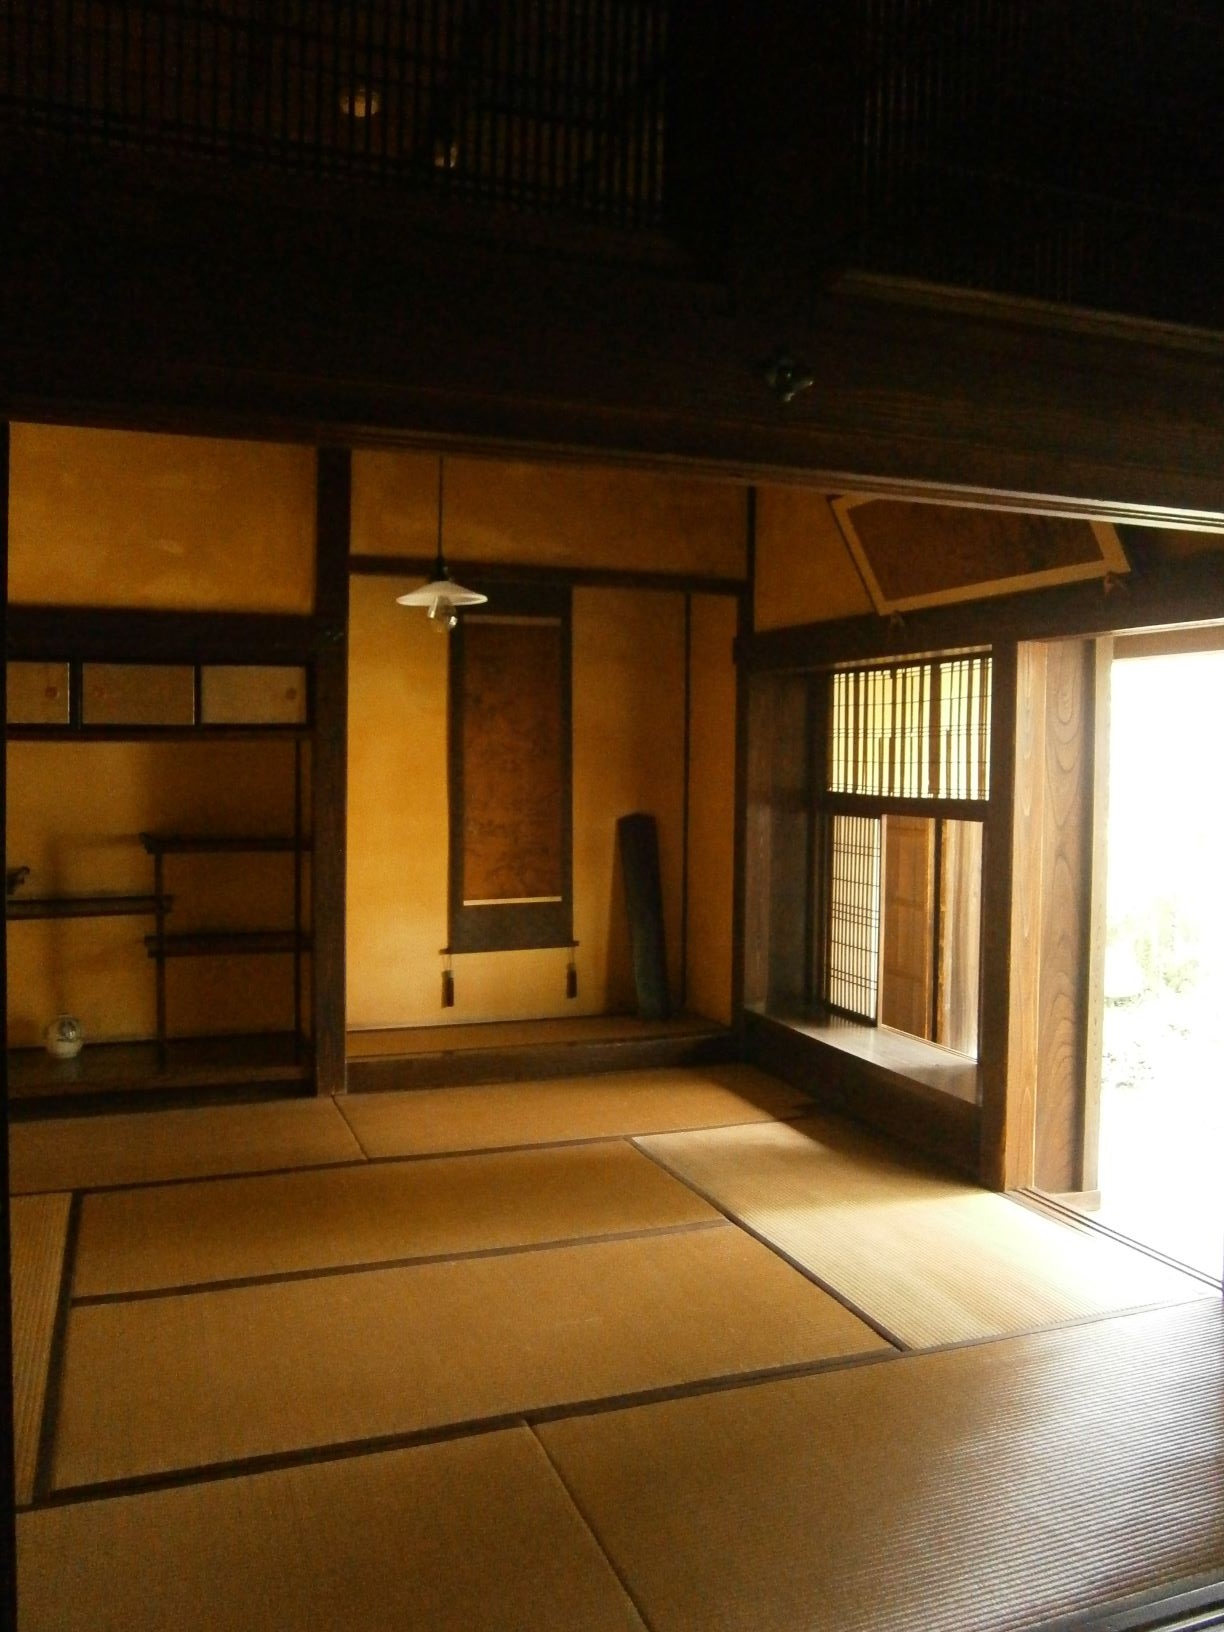 床の間に掛け軸があり、右側の窓が開けられ太陽光が入ってきている上座敷の部屋の写真